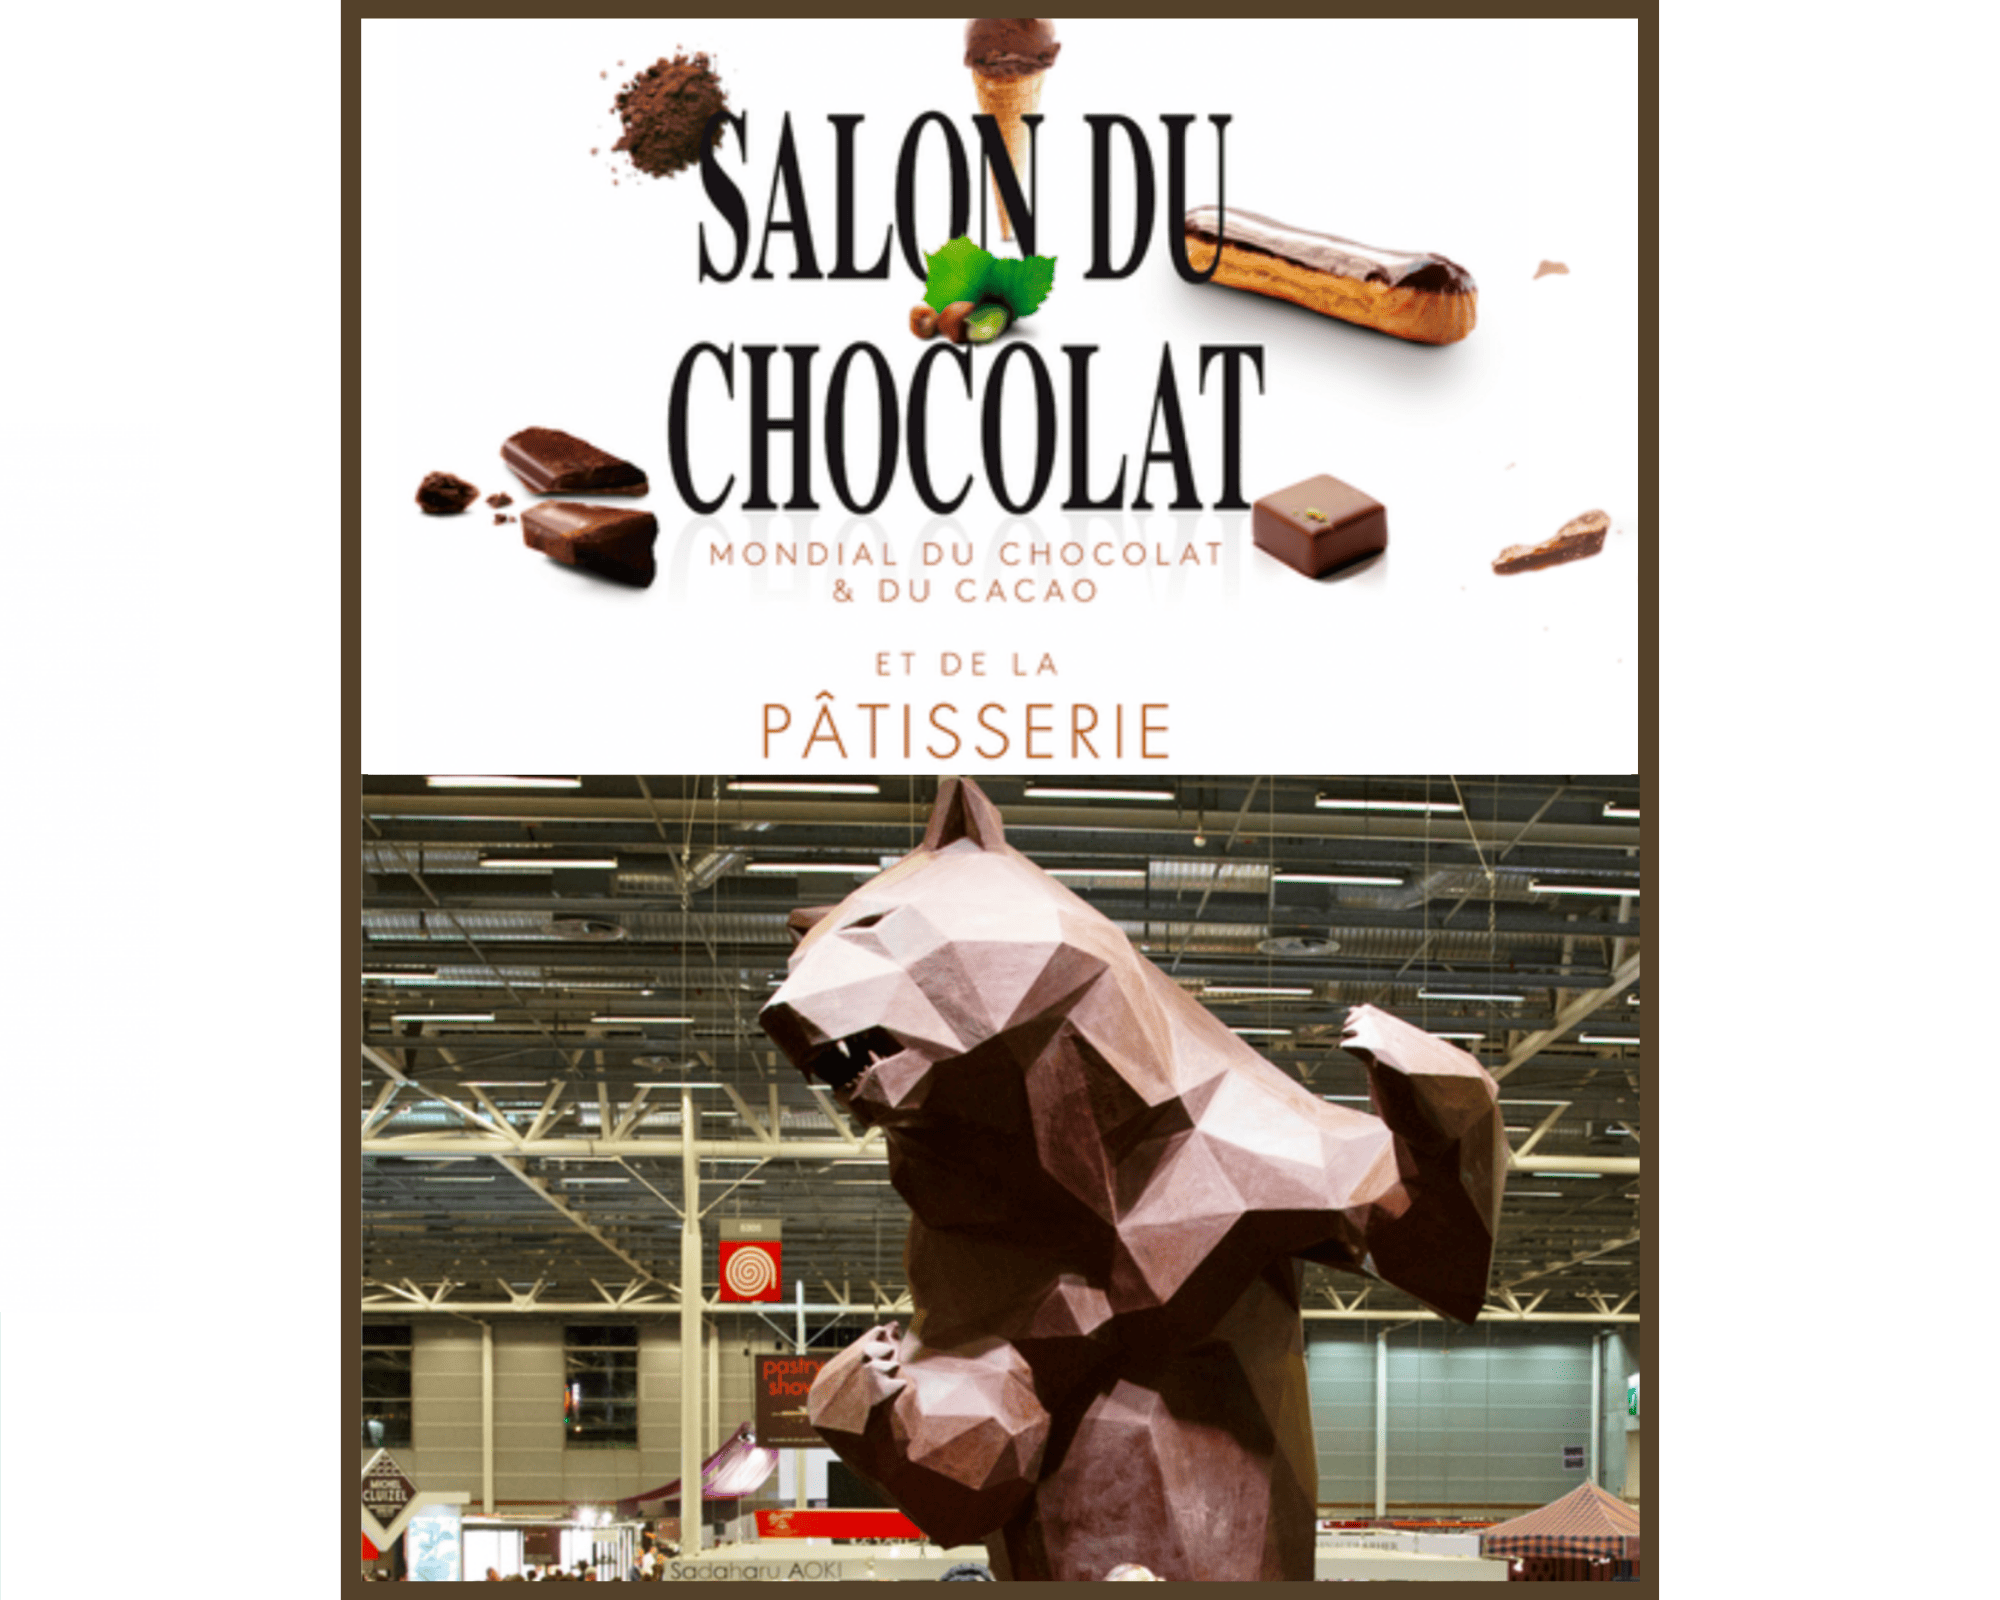 27e Salon du Chocolat cet automne à Paris Porte de Versailles